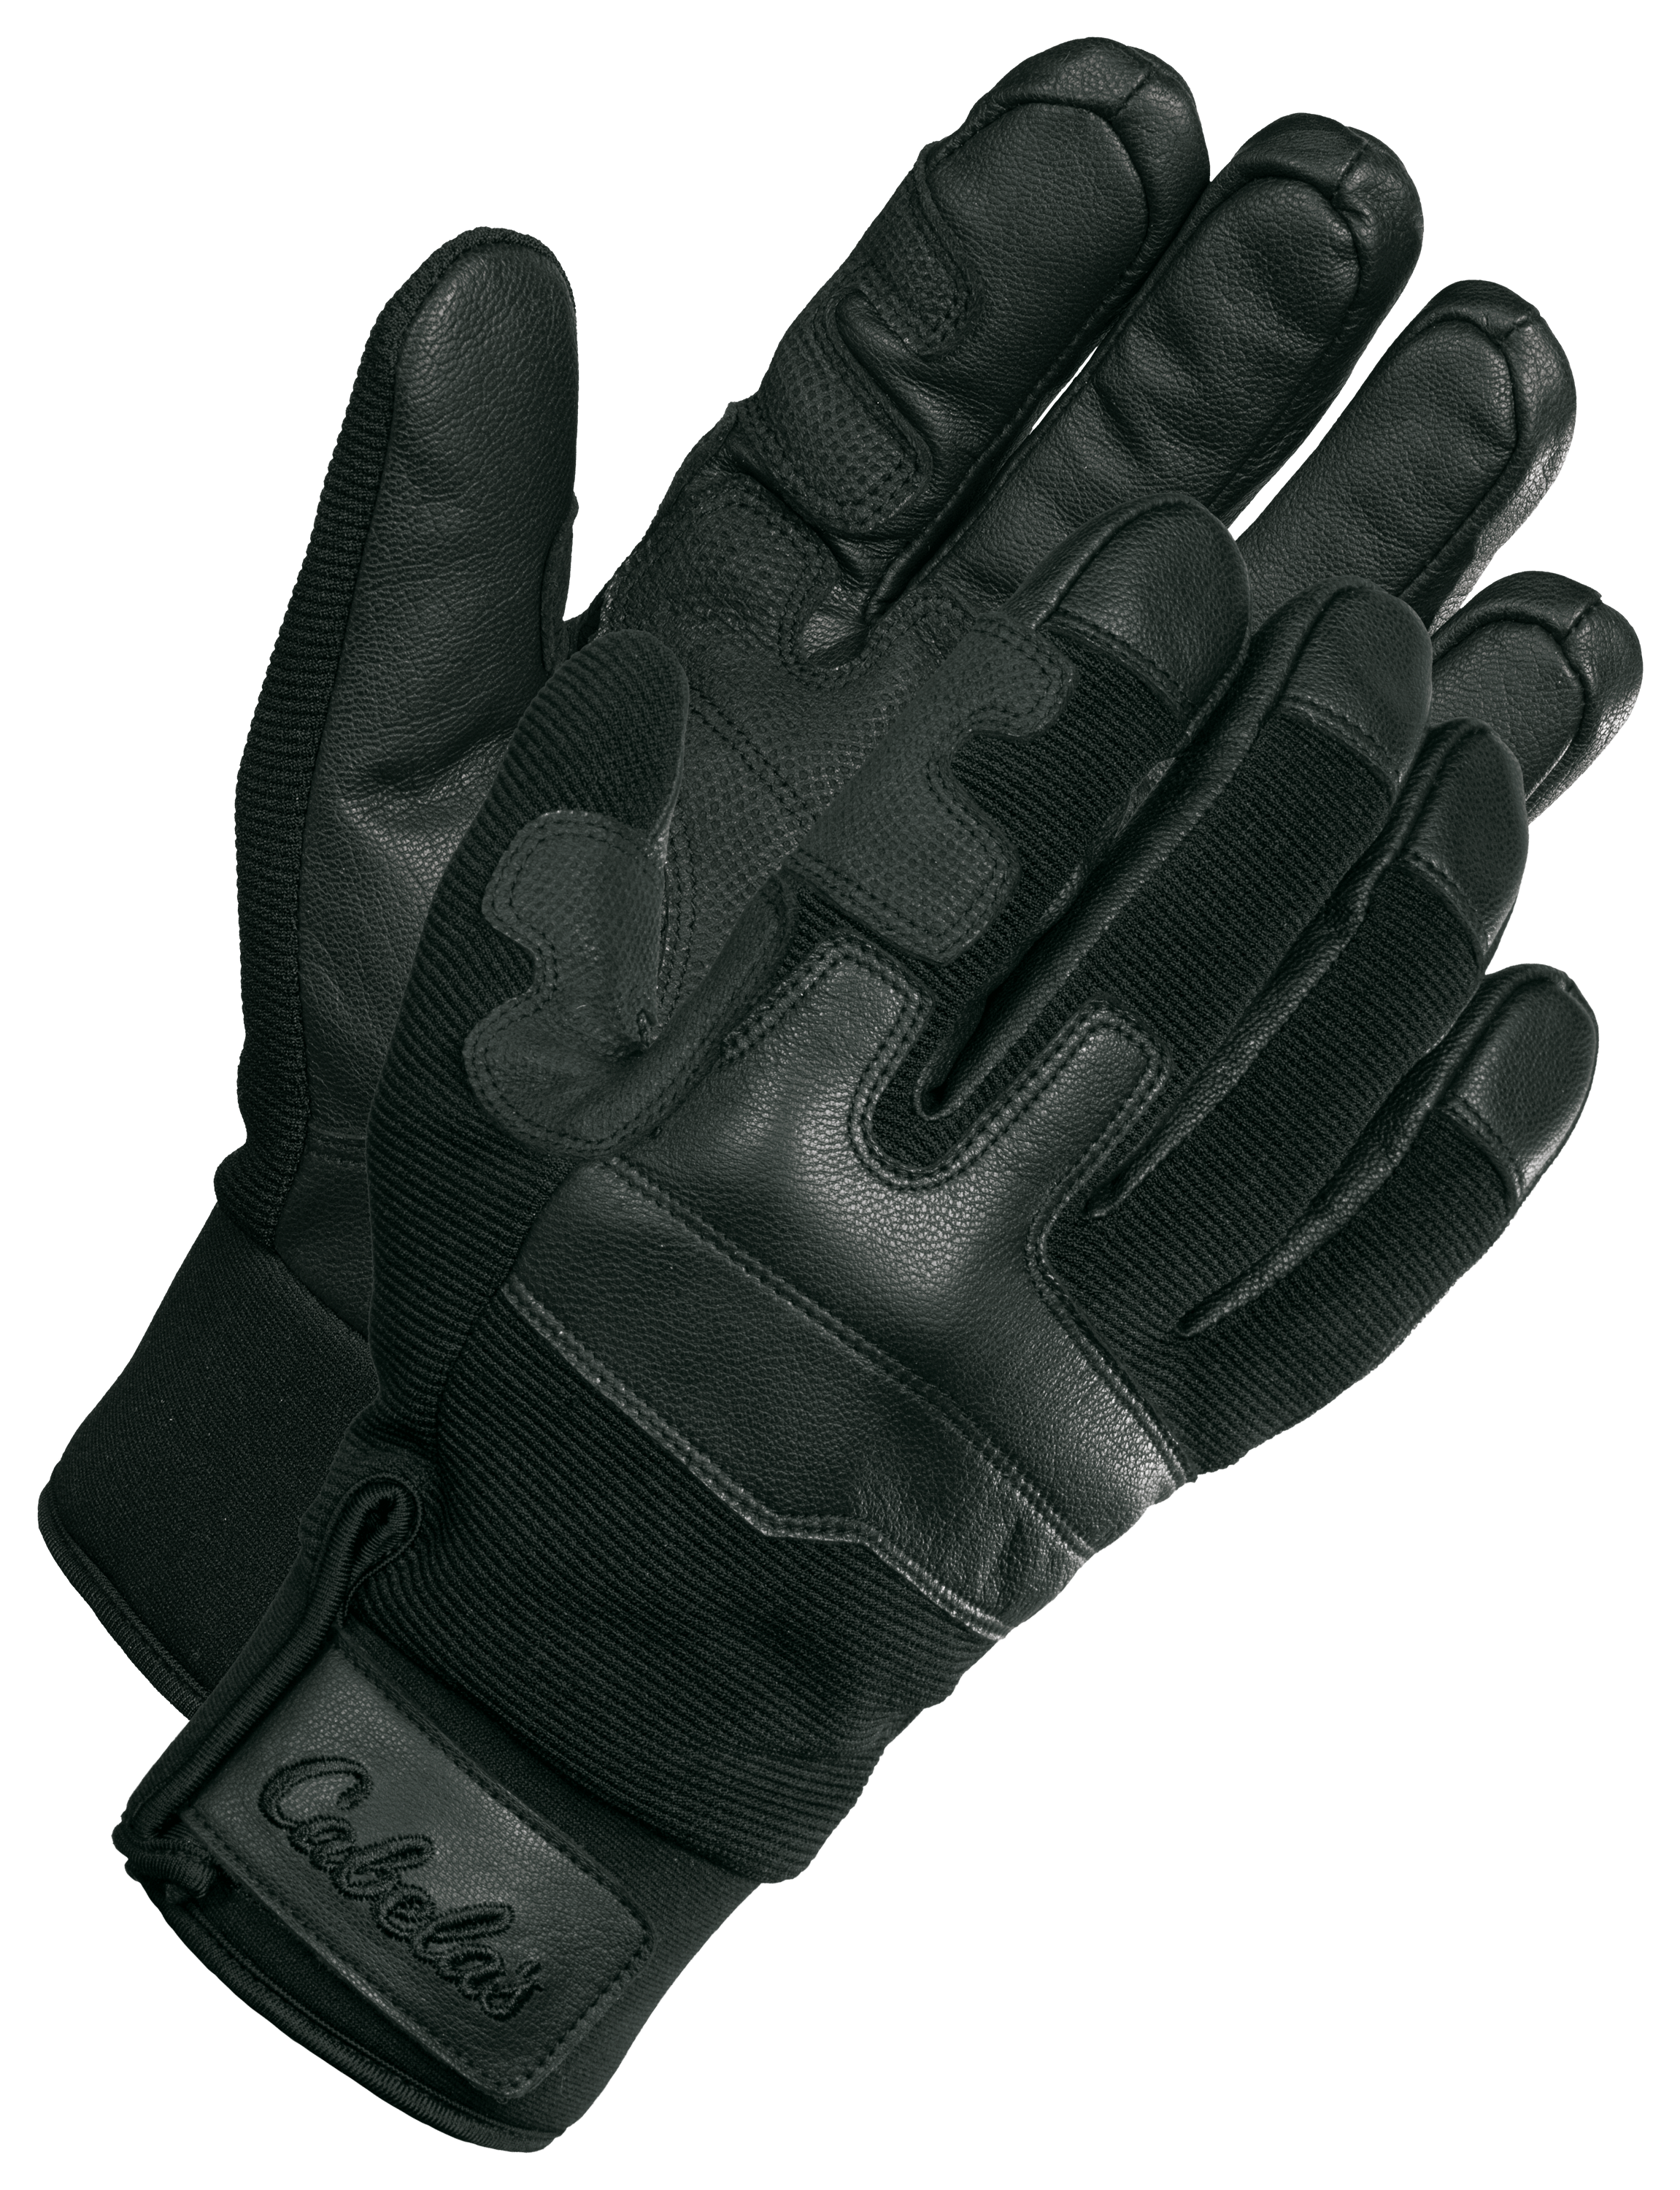 Cabela's Guidewear Men's Fishing Gloves Windstopper Full Finger Black Red